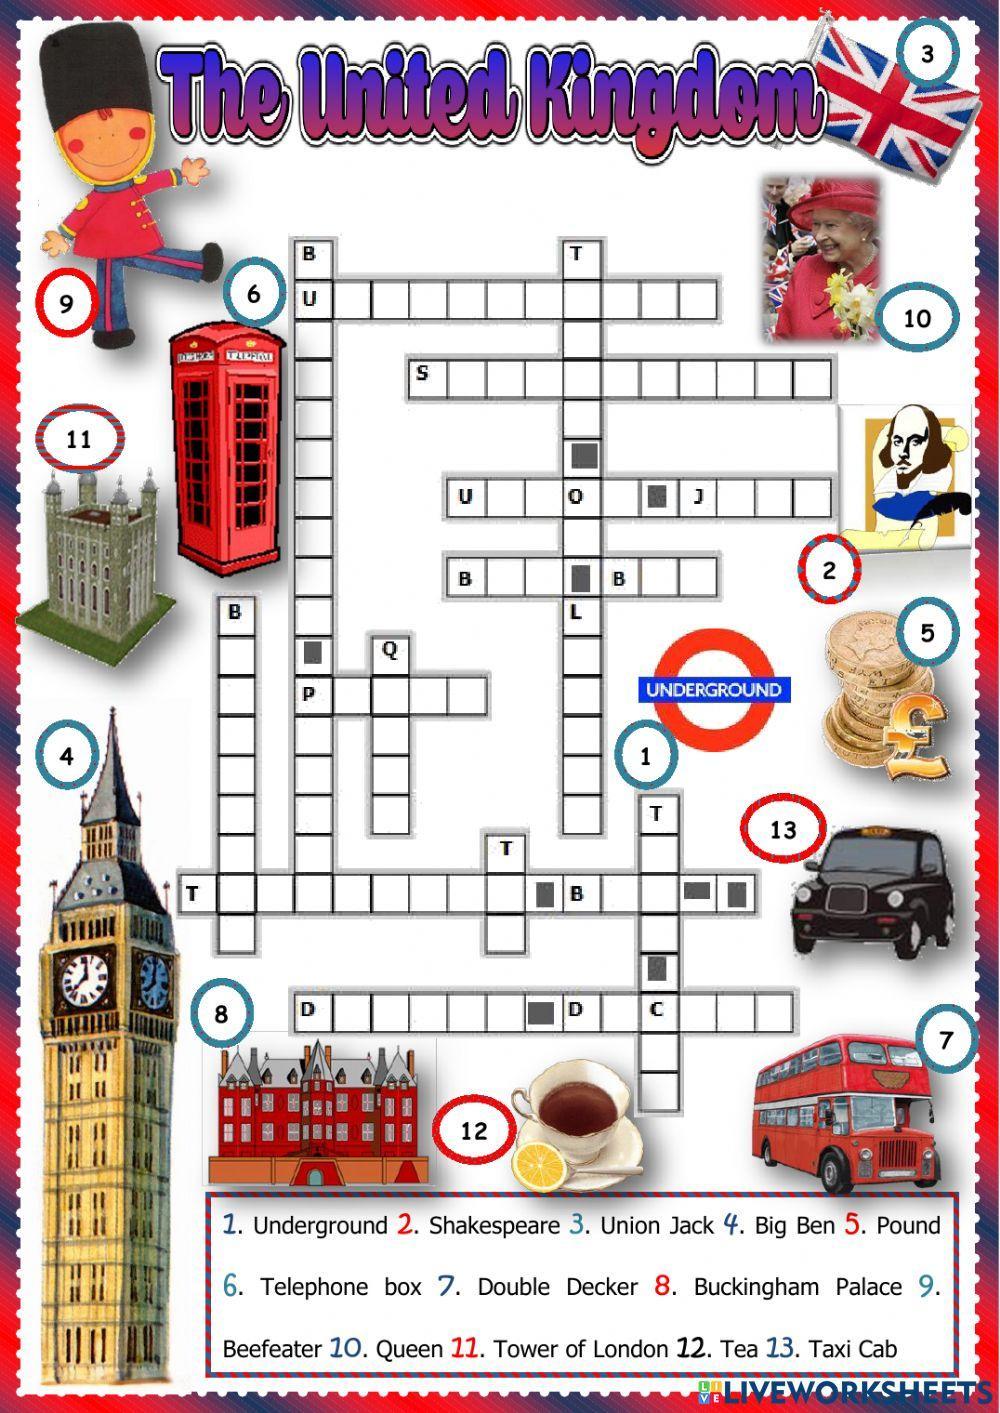 UK crossword